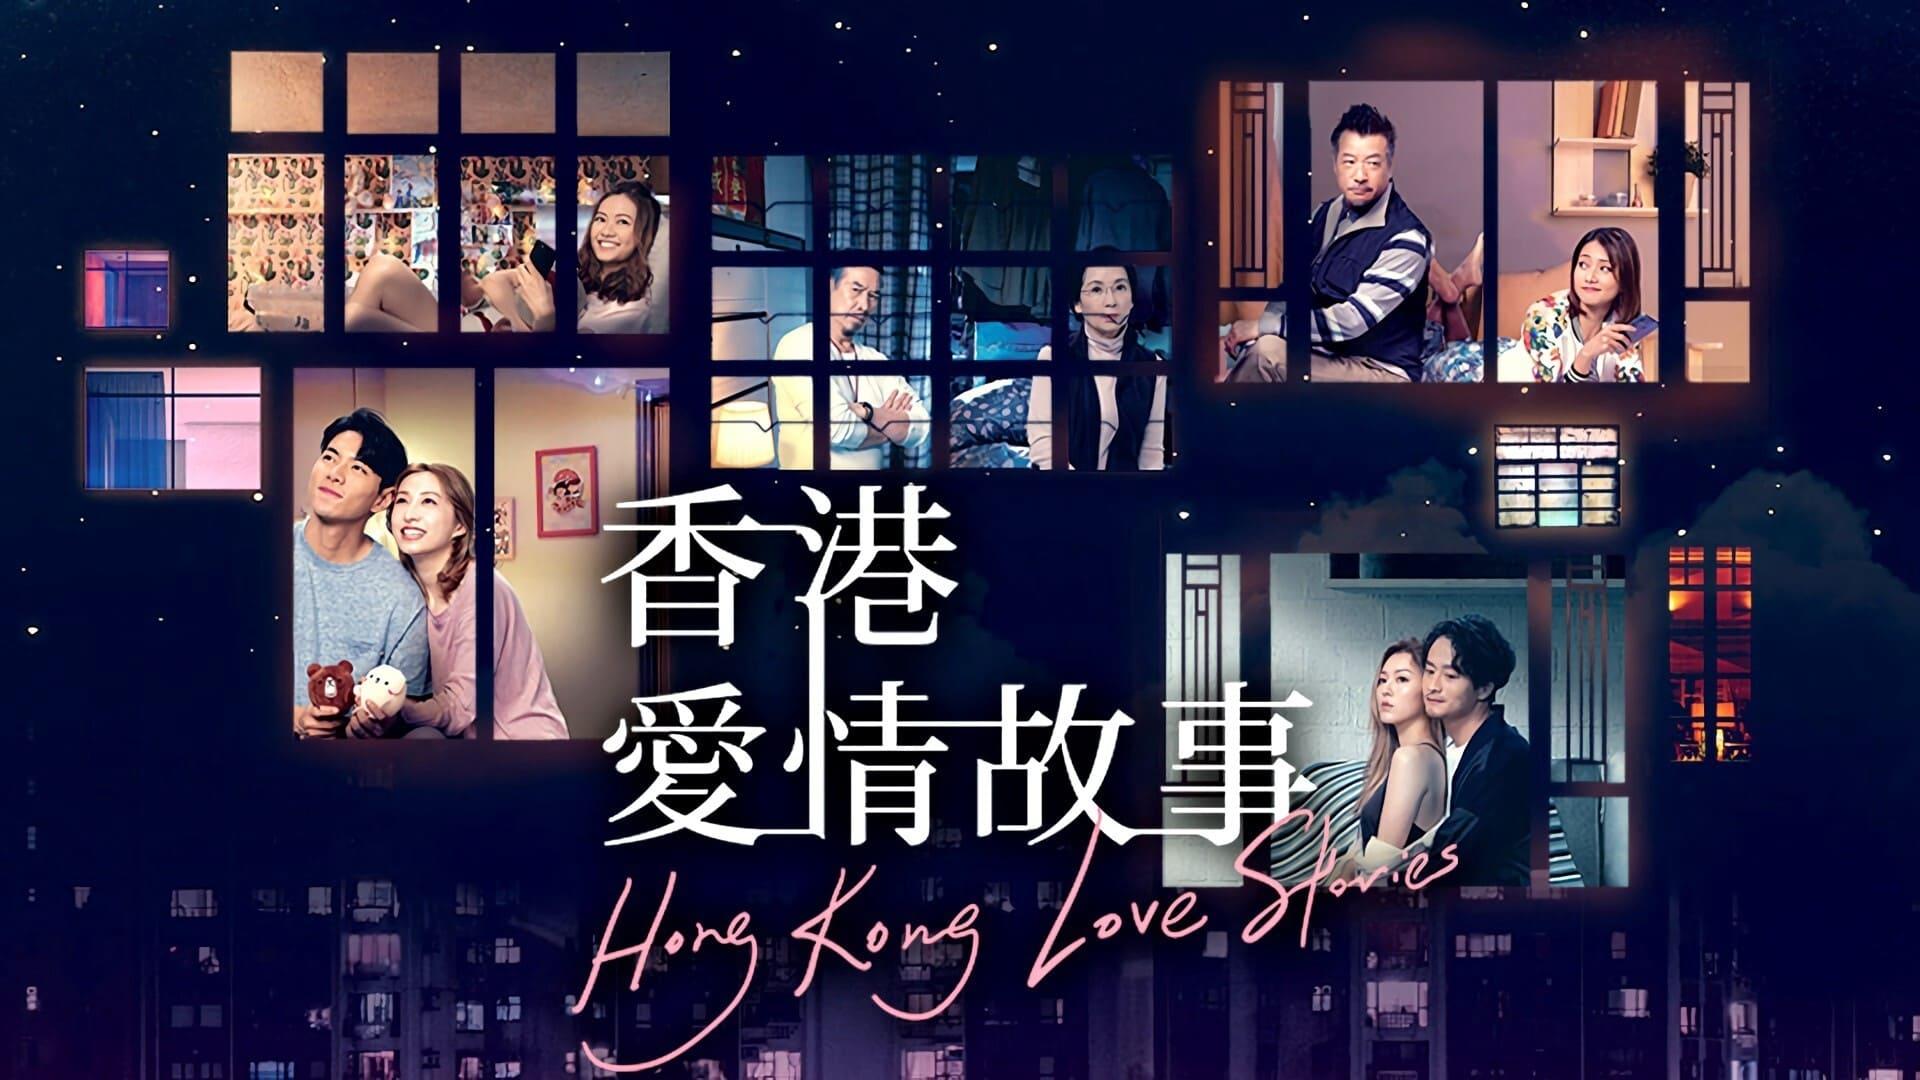 Hong Kong Love Stories backdrop